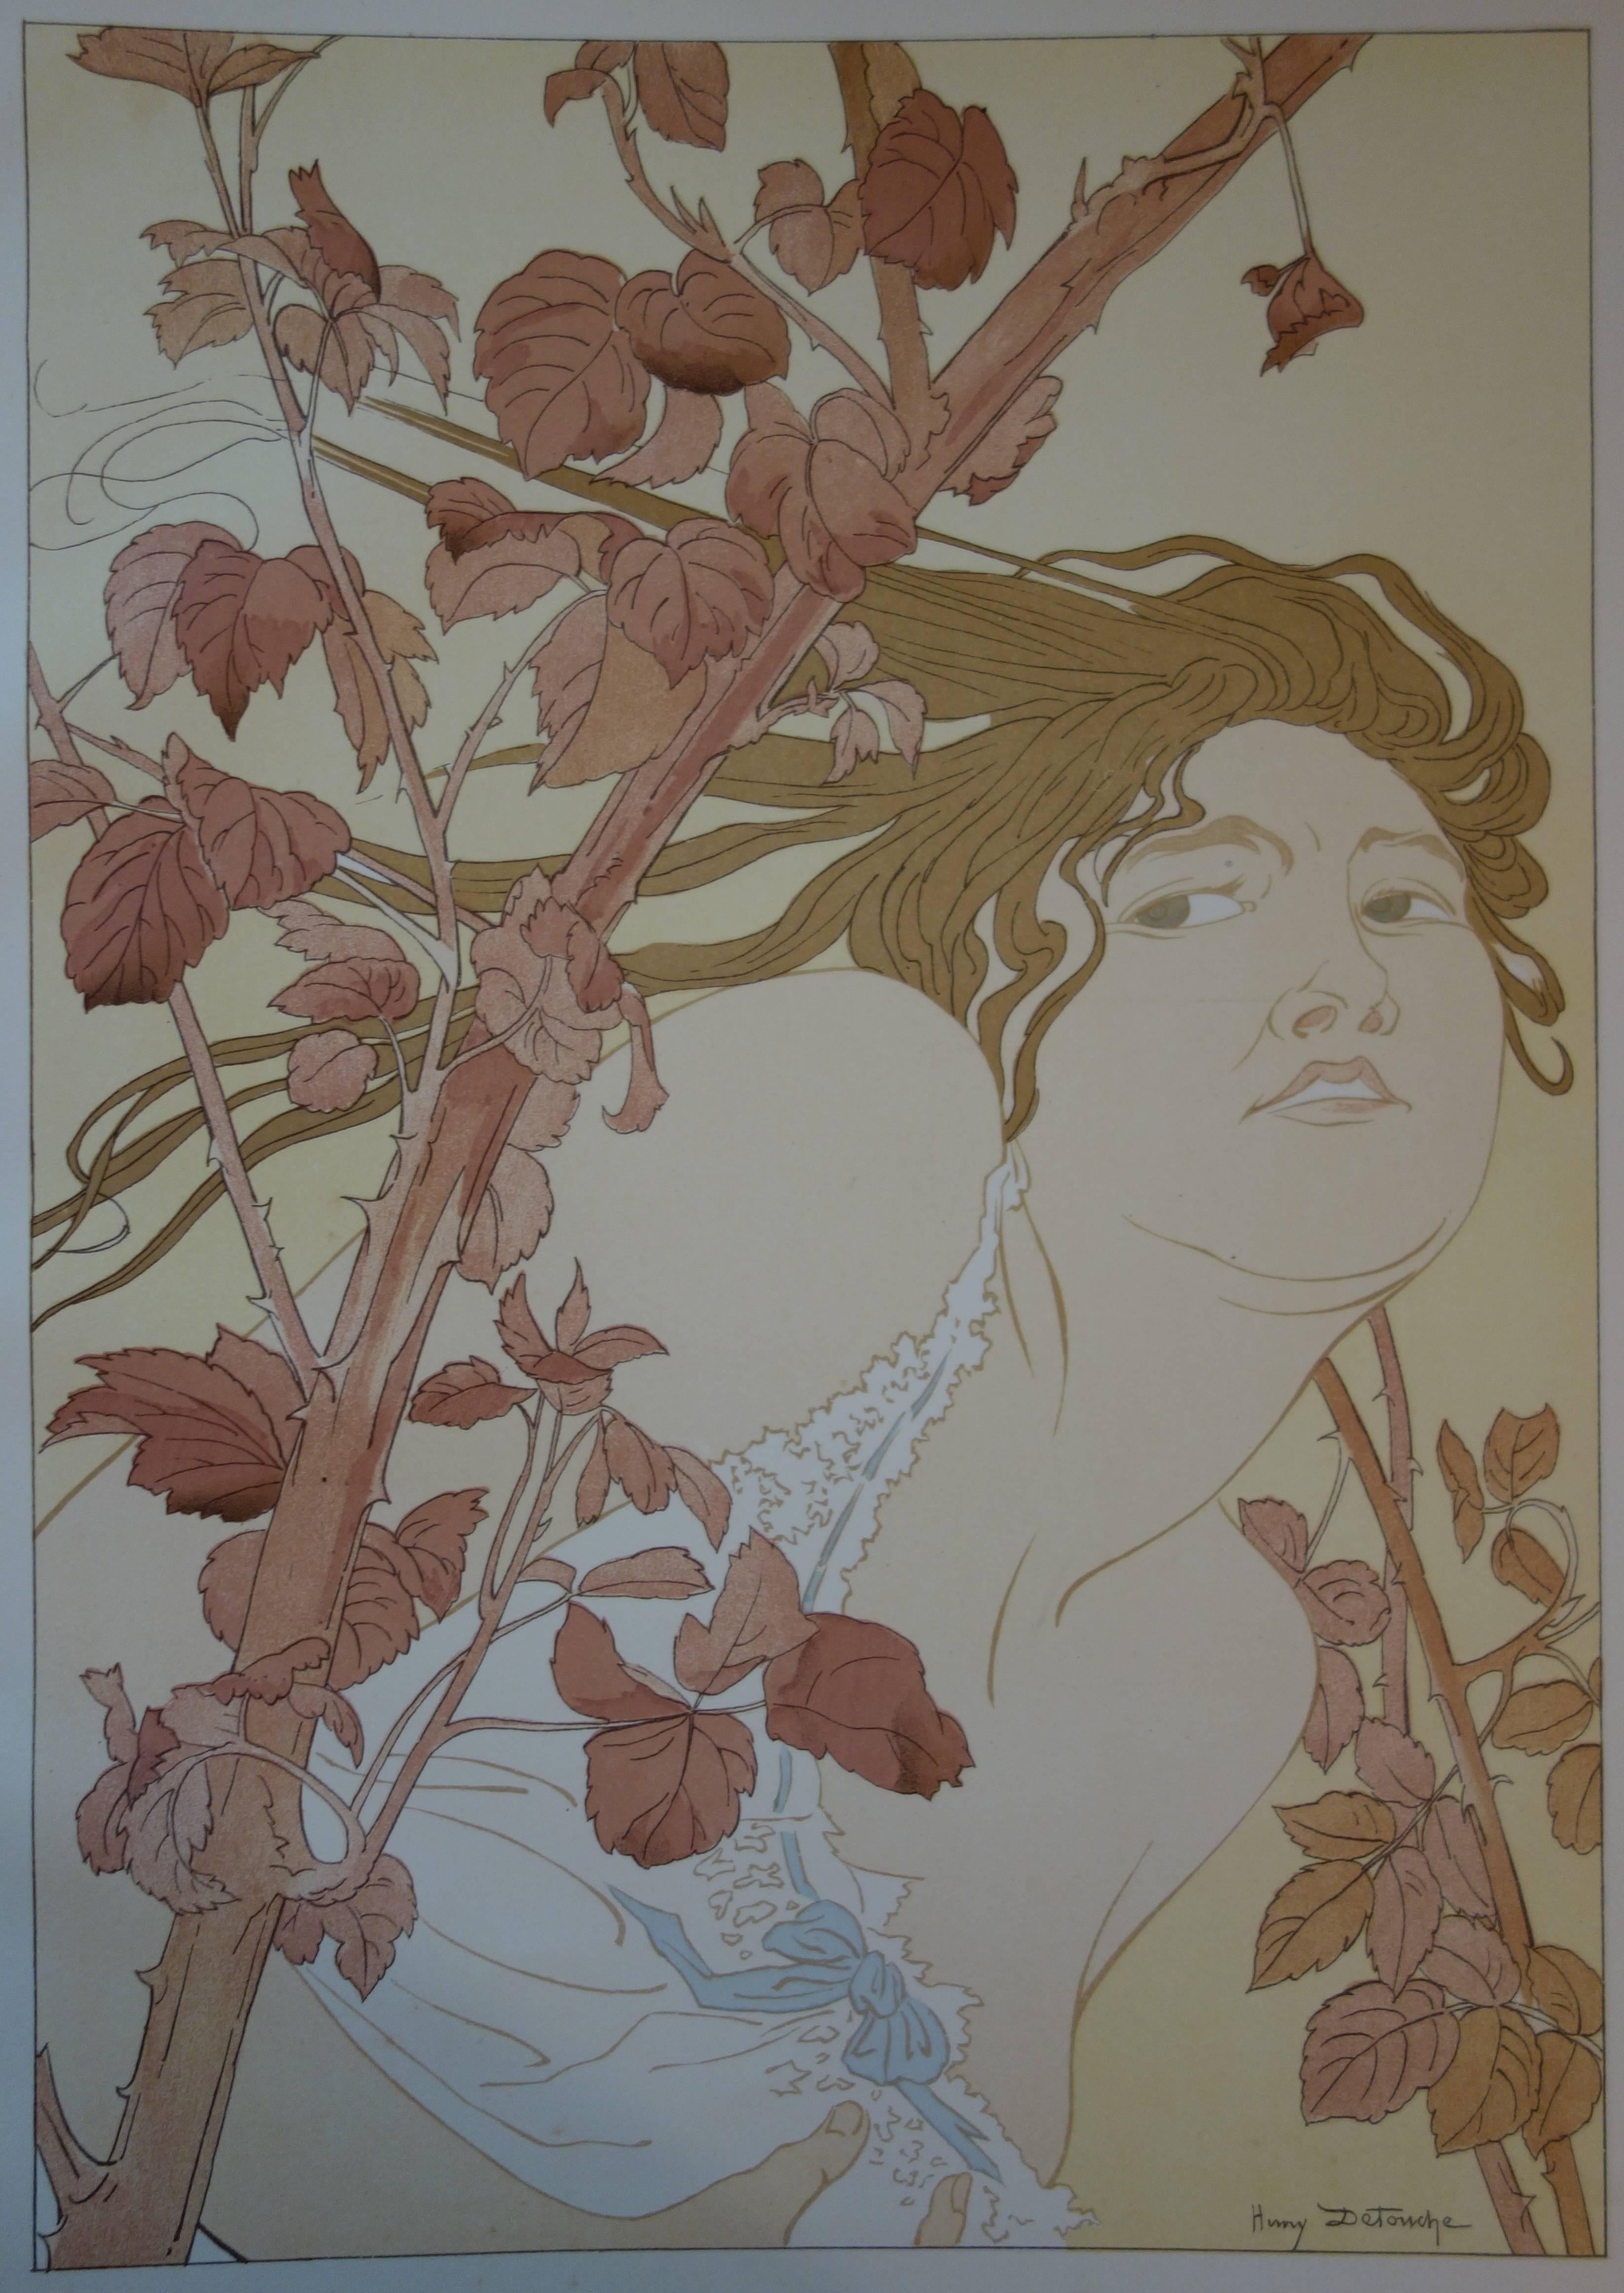 In the Brambles - Original lithograph - 1897 - Art Nouveau Print by Henry Detouche